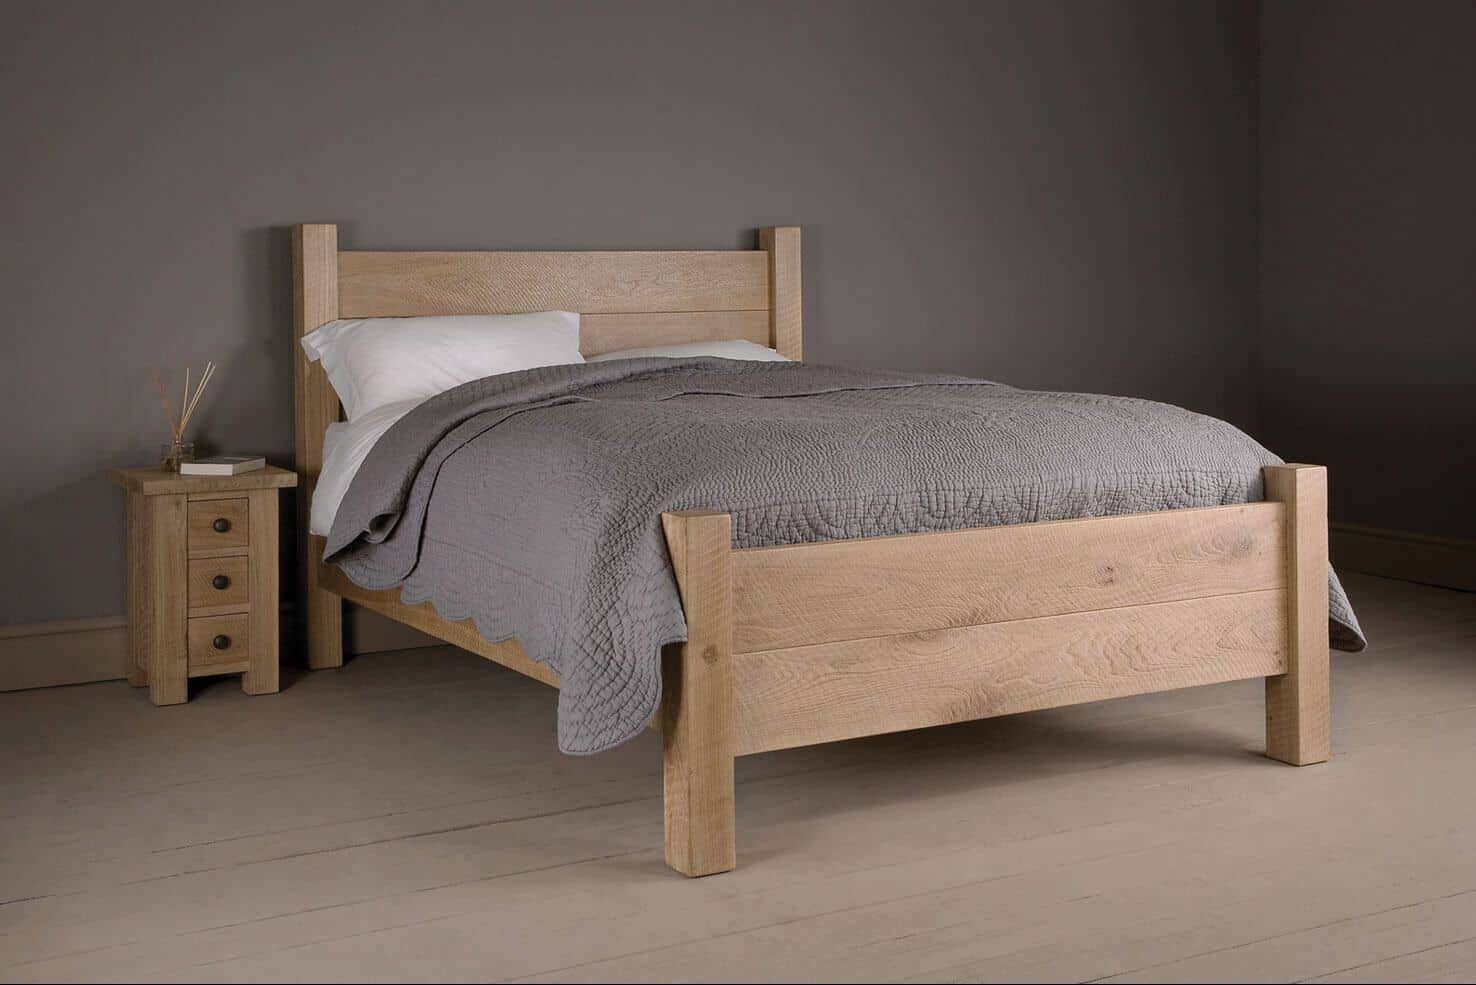 تصاميم سرير خشب مفرد مودرن رائعة ومثيرة للاعجاب - آراد